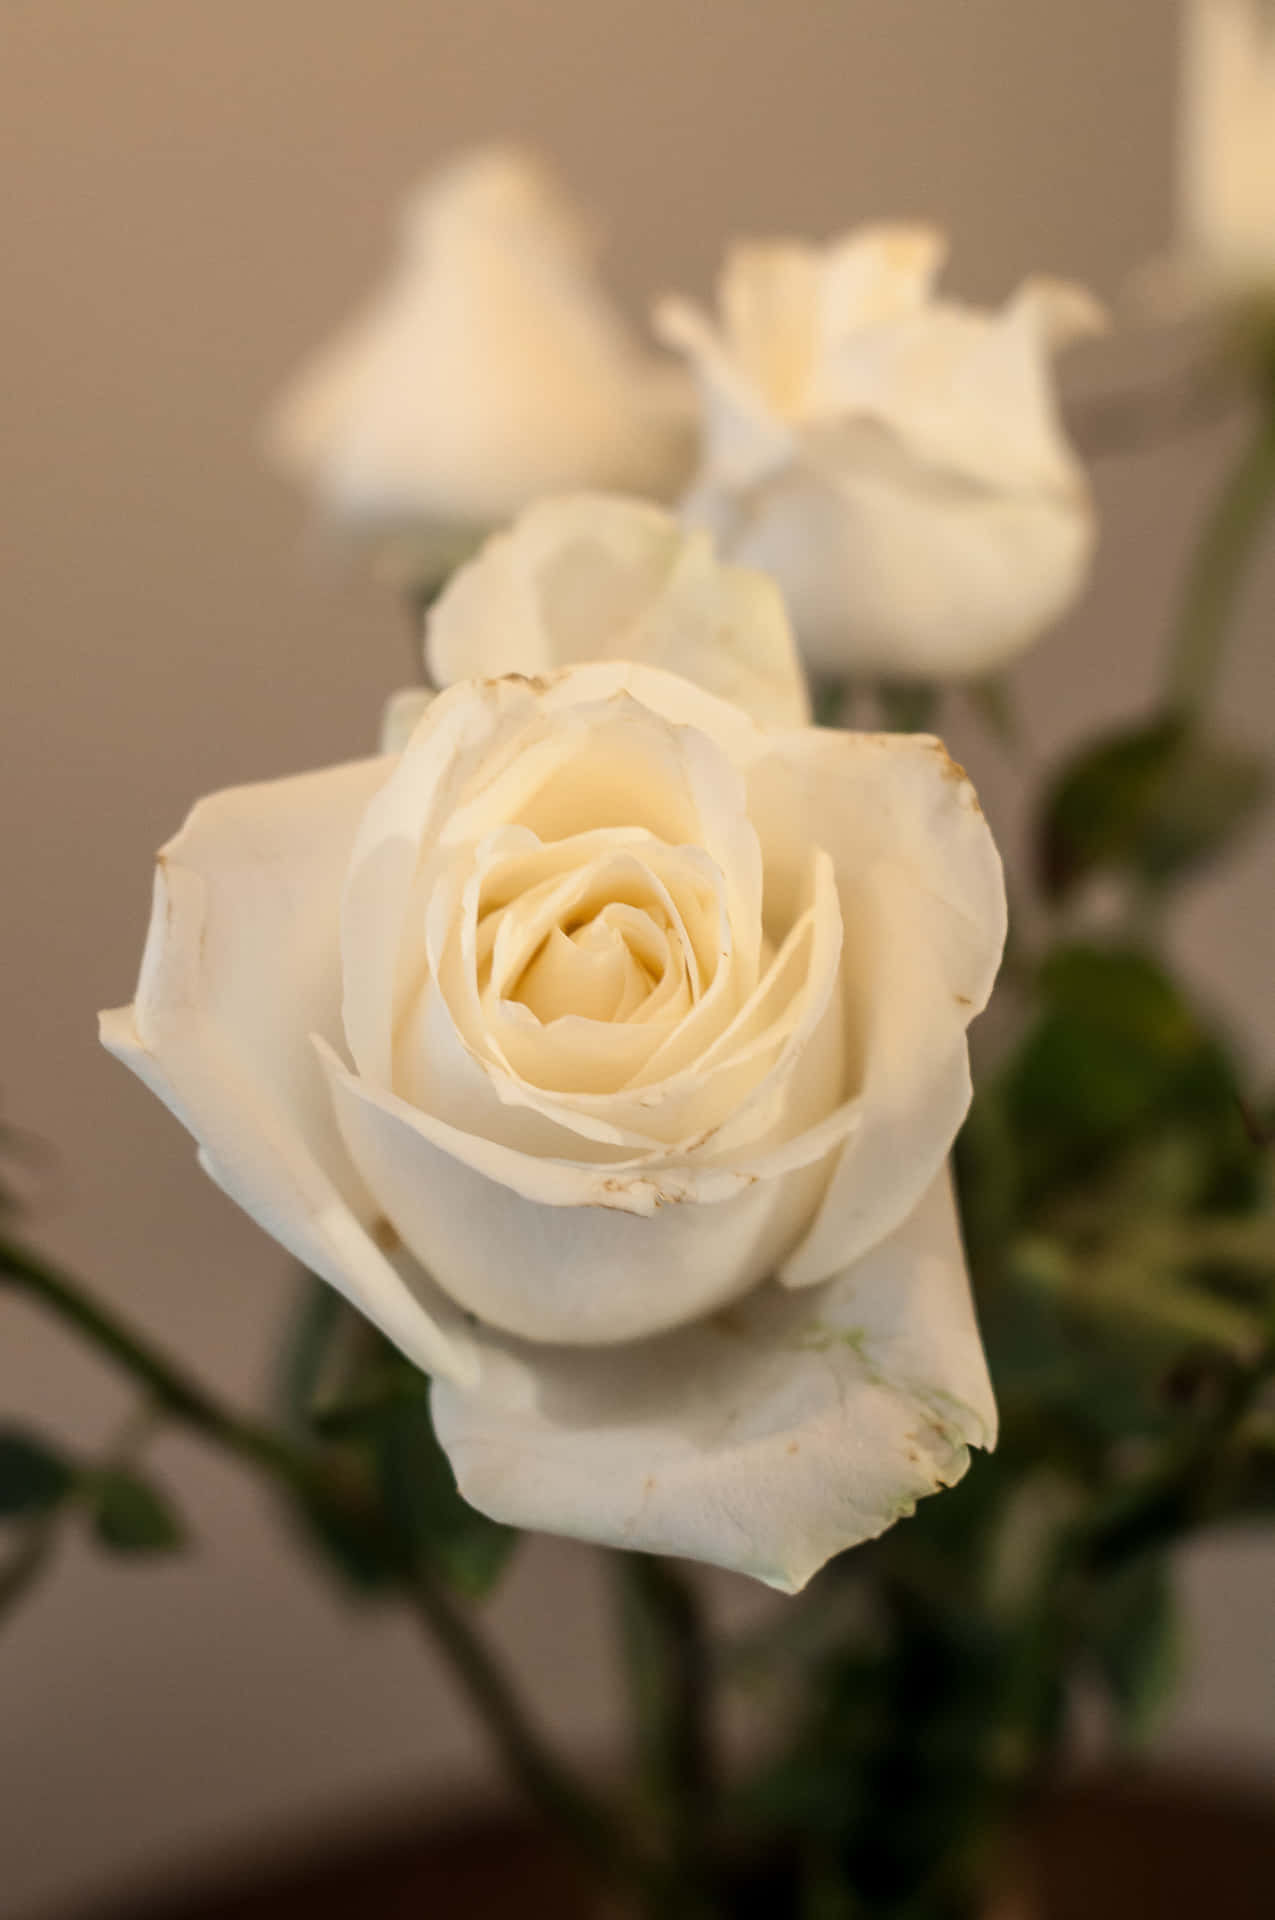 Fundode Tela Branco Com Estética Vintage E Retrato De Rosas Brancas.